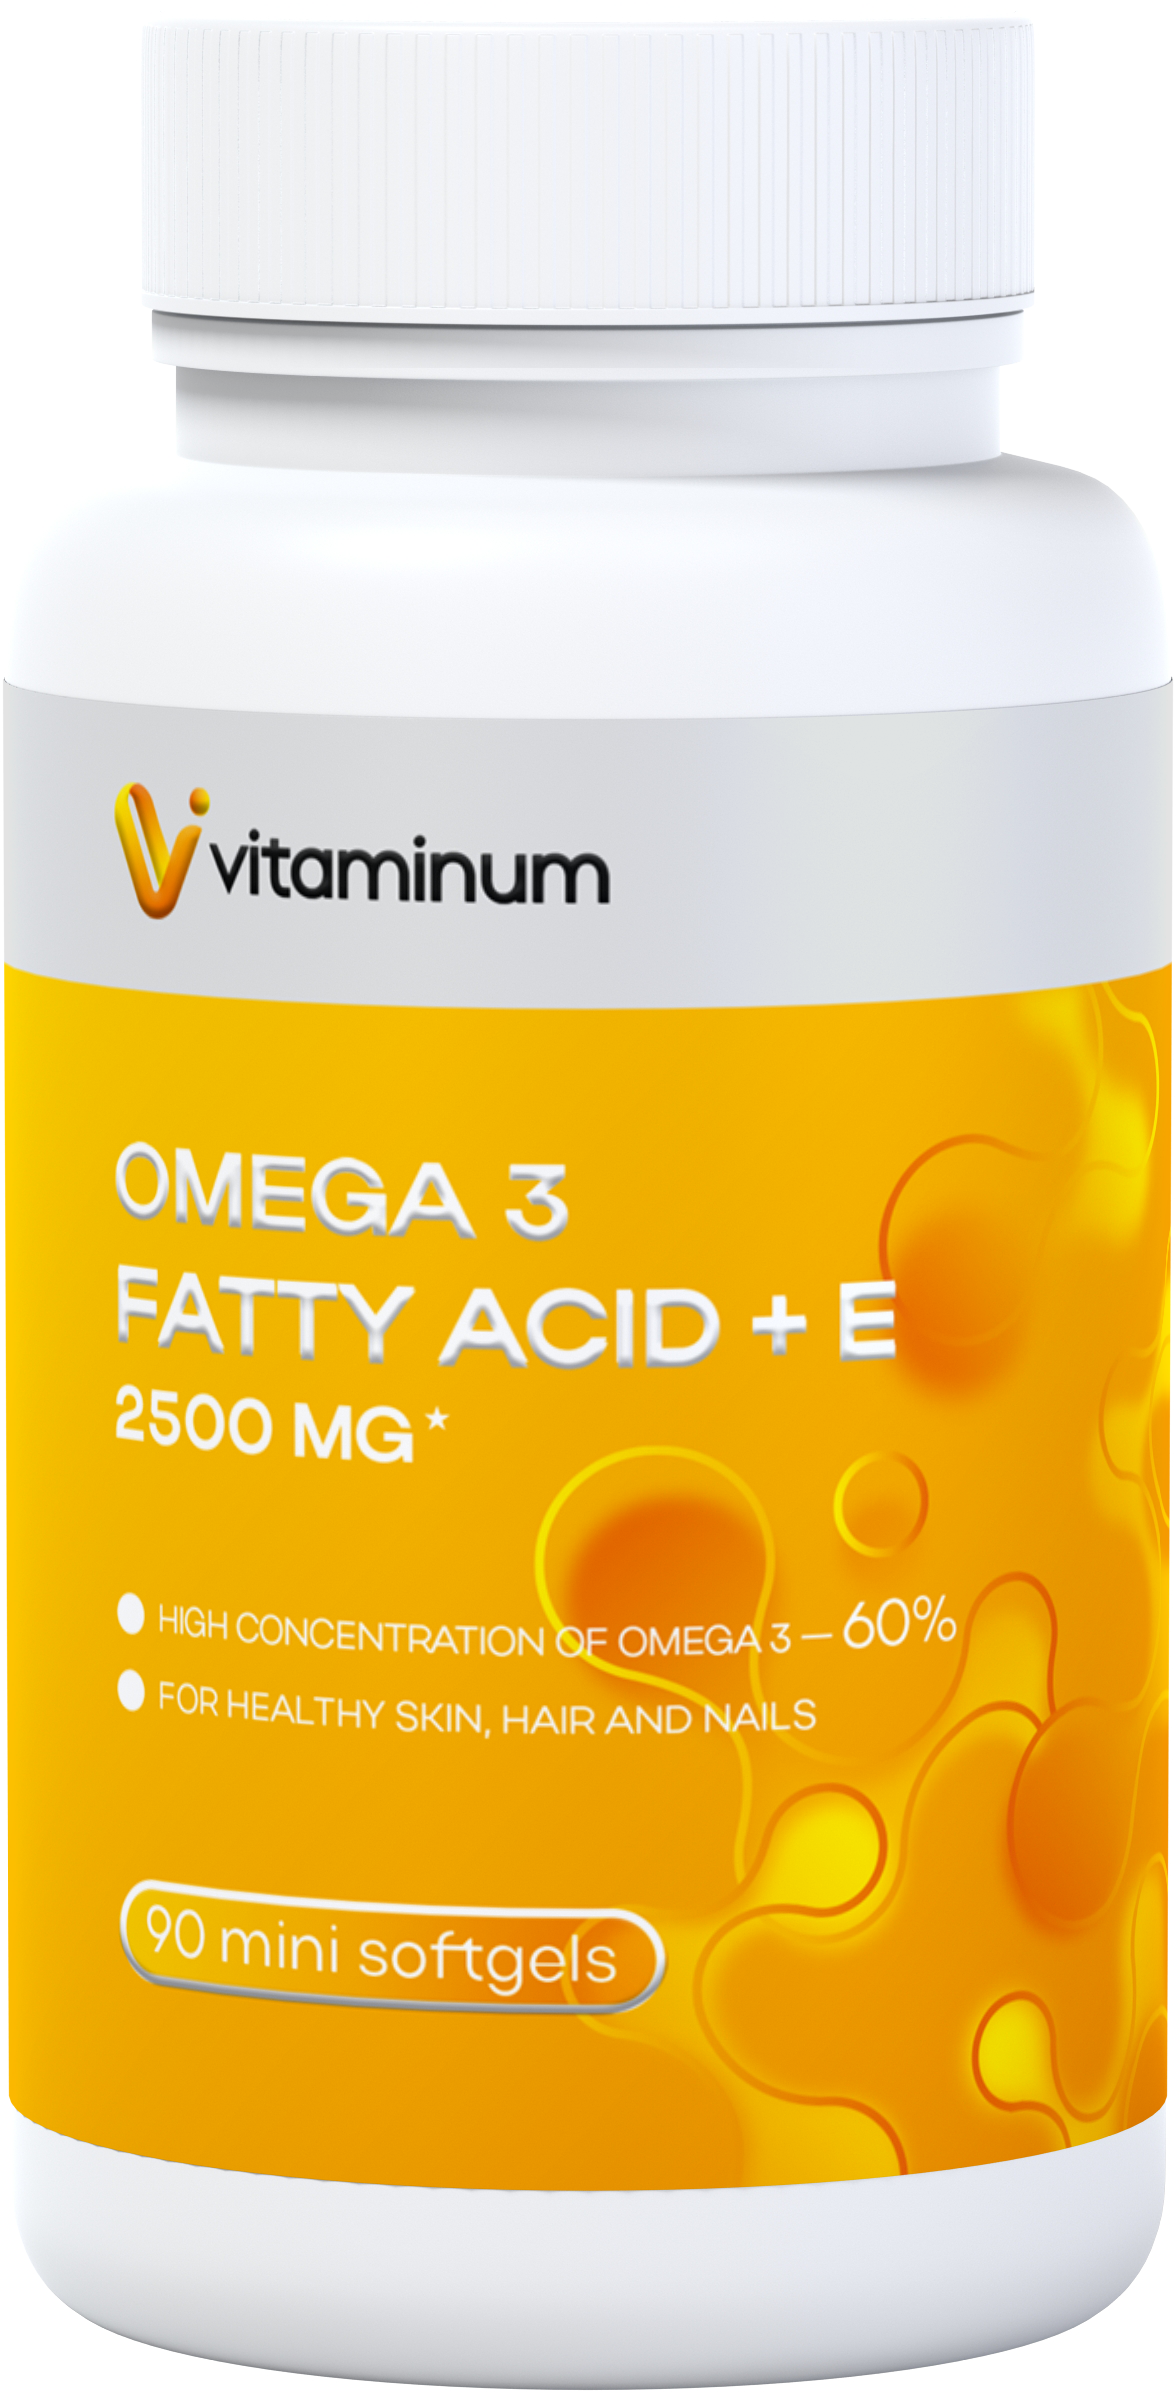  Vitaminum ОМЕГА 3 60% + витамин Е (2500 MG*) 90 капсул 700 мг   в Мончегорске